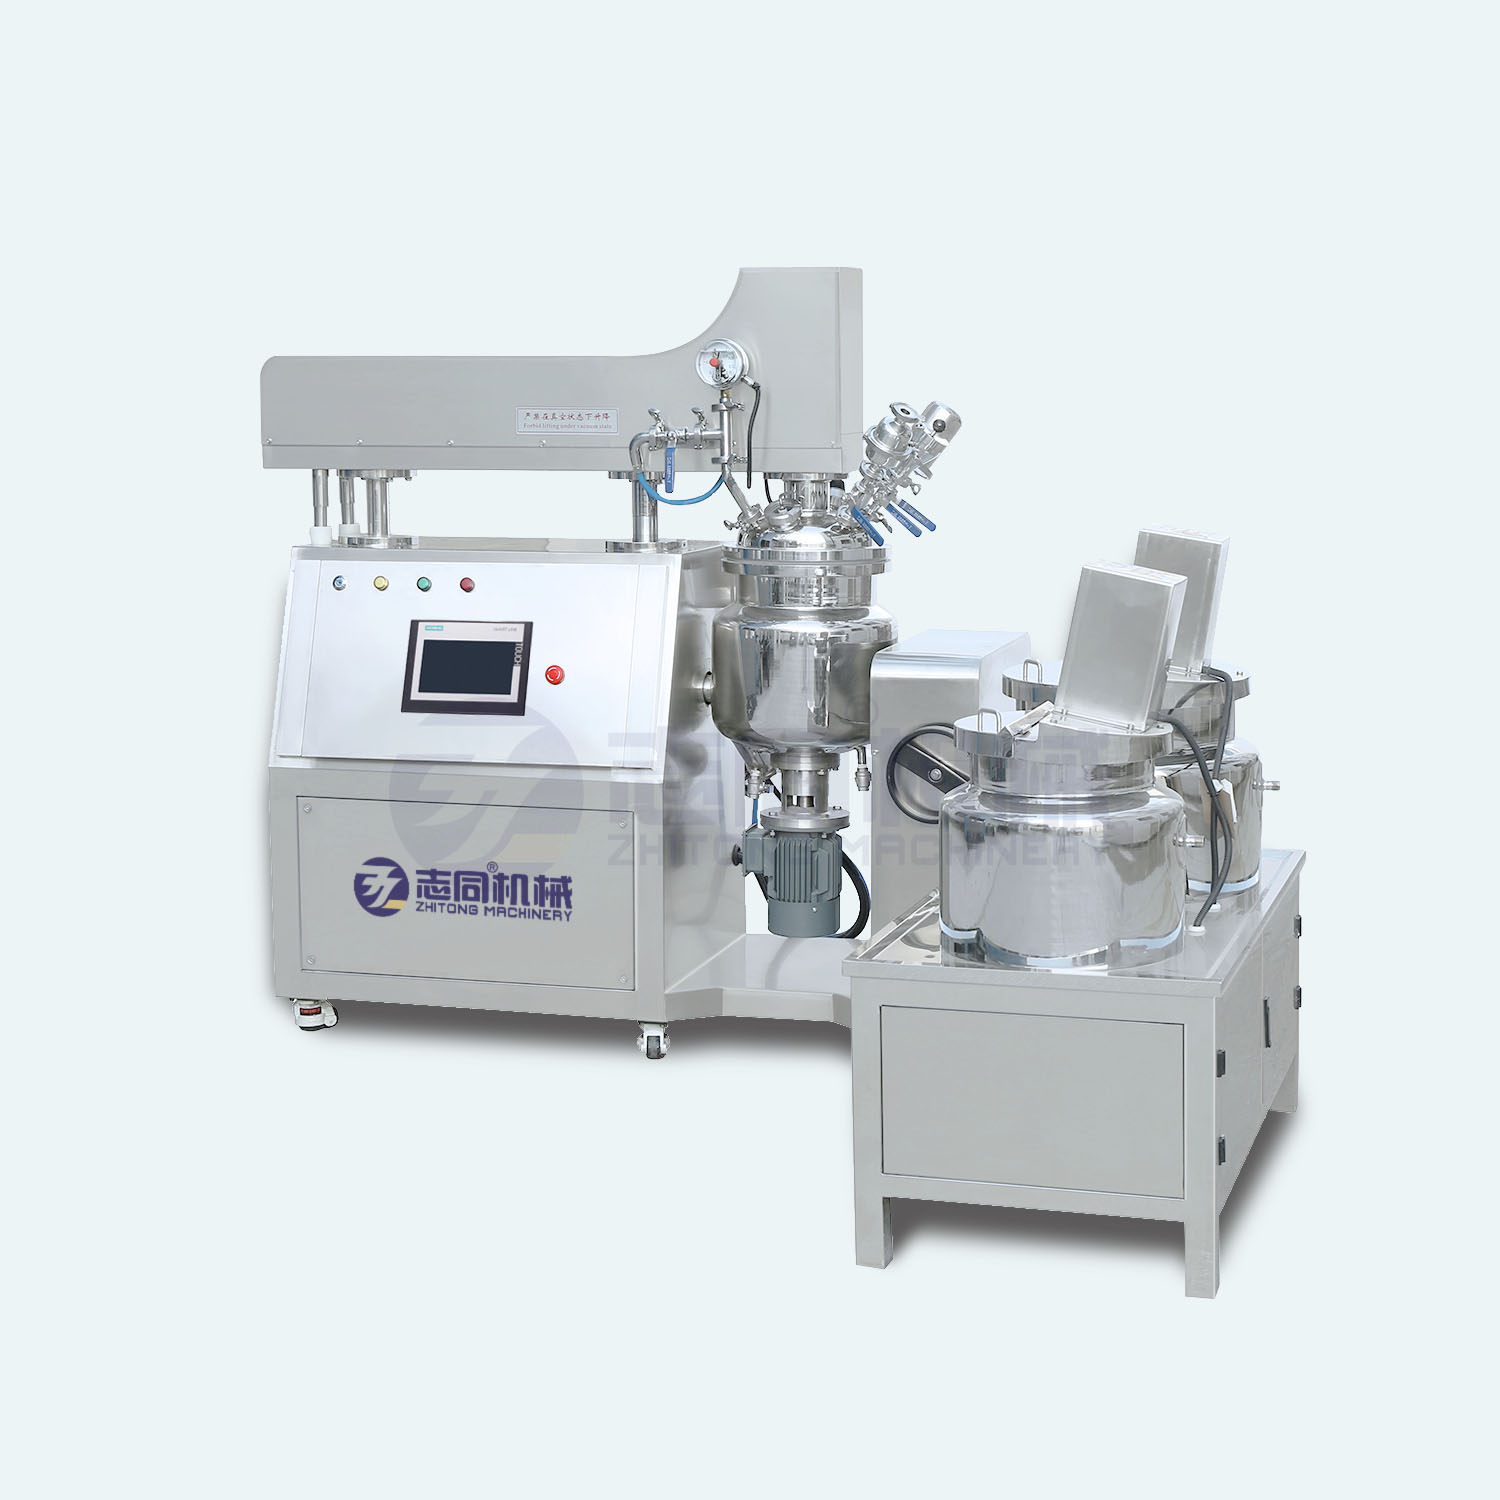 10 Liter Labor-Vakuum-Homogenisierungs-Emulgator-Mischer-Wasserkocher-Geräte-Maschinen-Tank